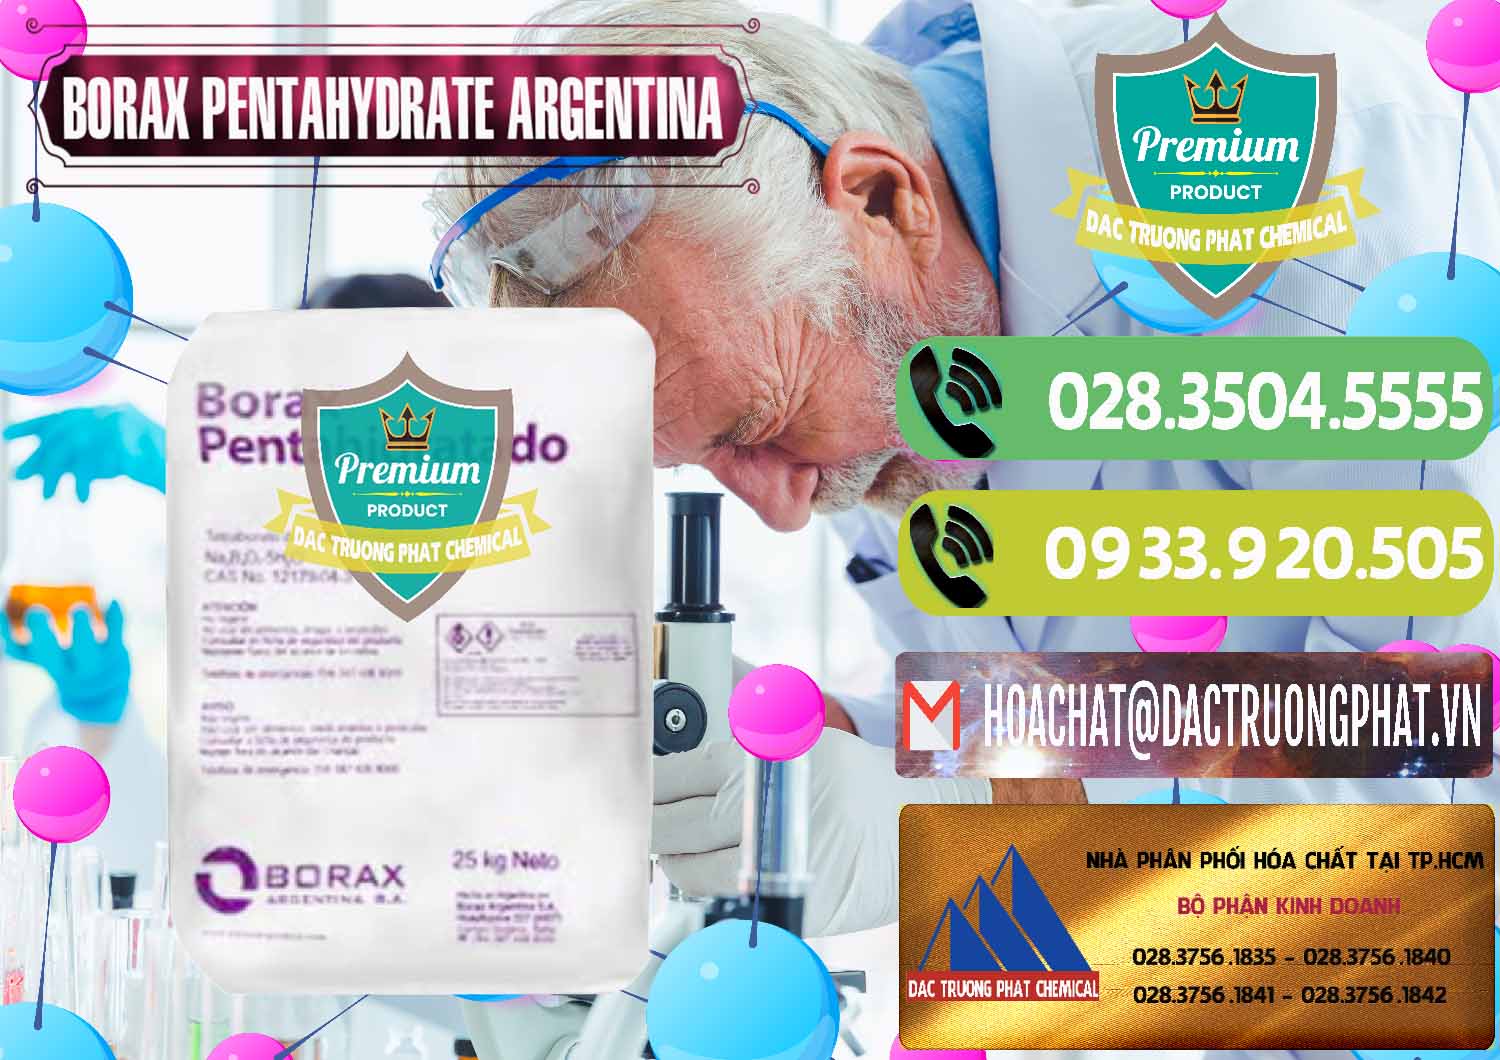 Chuyên bán & phân phối Borax Pentahydrate Argentina - 0447 - Đơn vị chuyên kinh doanh - phân phối hóa chất tại TP.HCM - hoachatmientay.vn